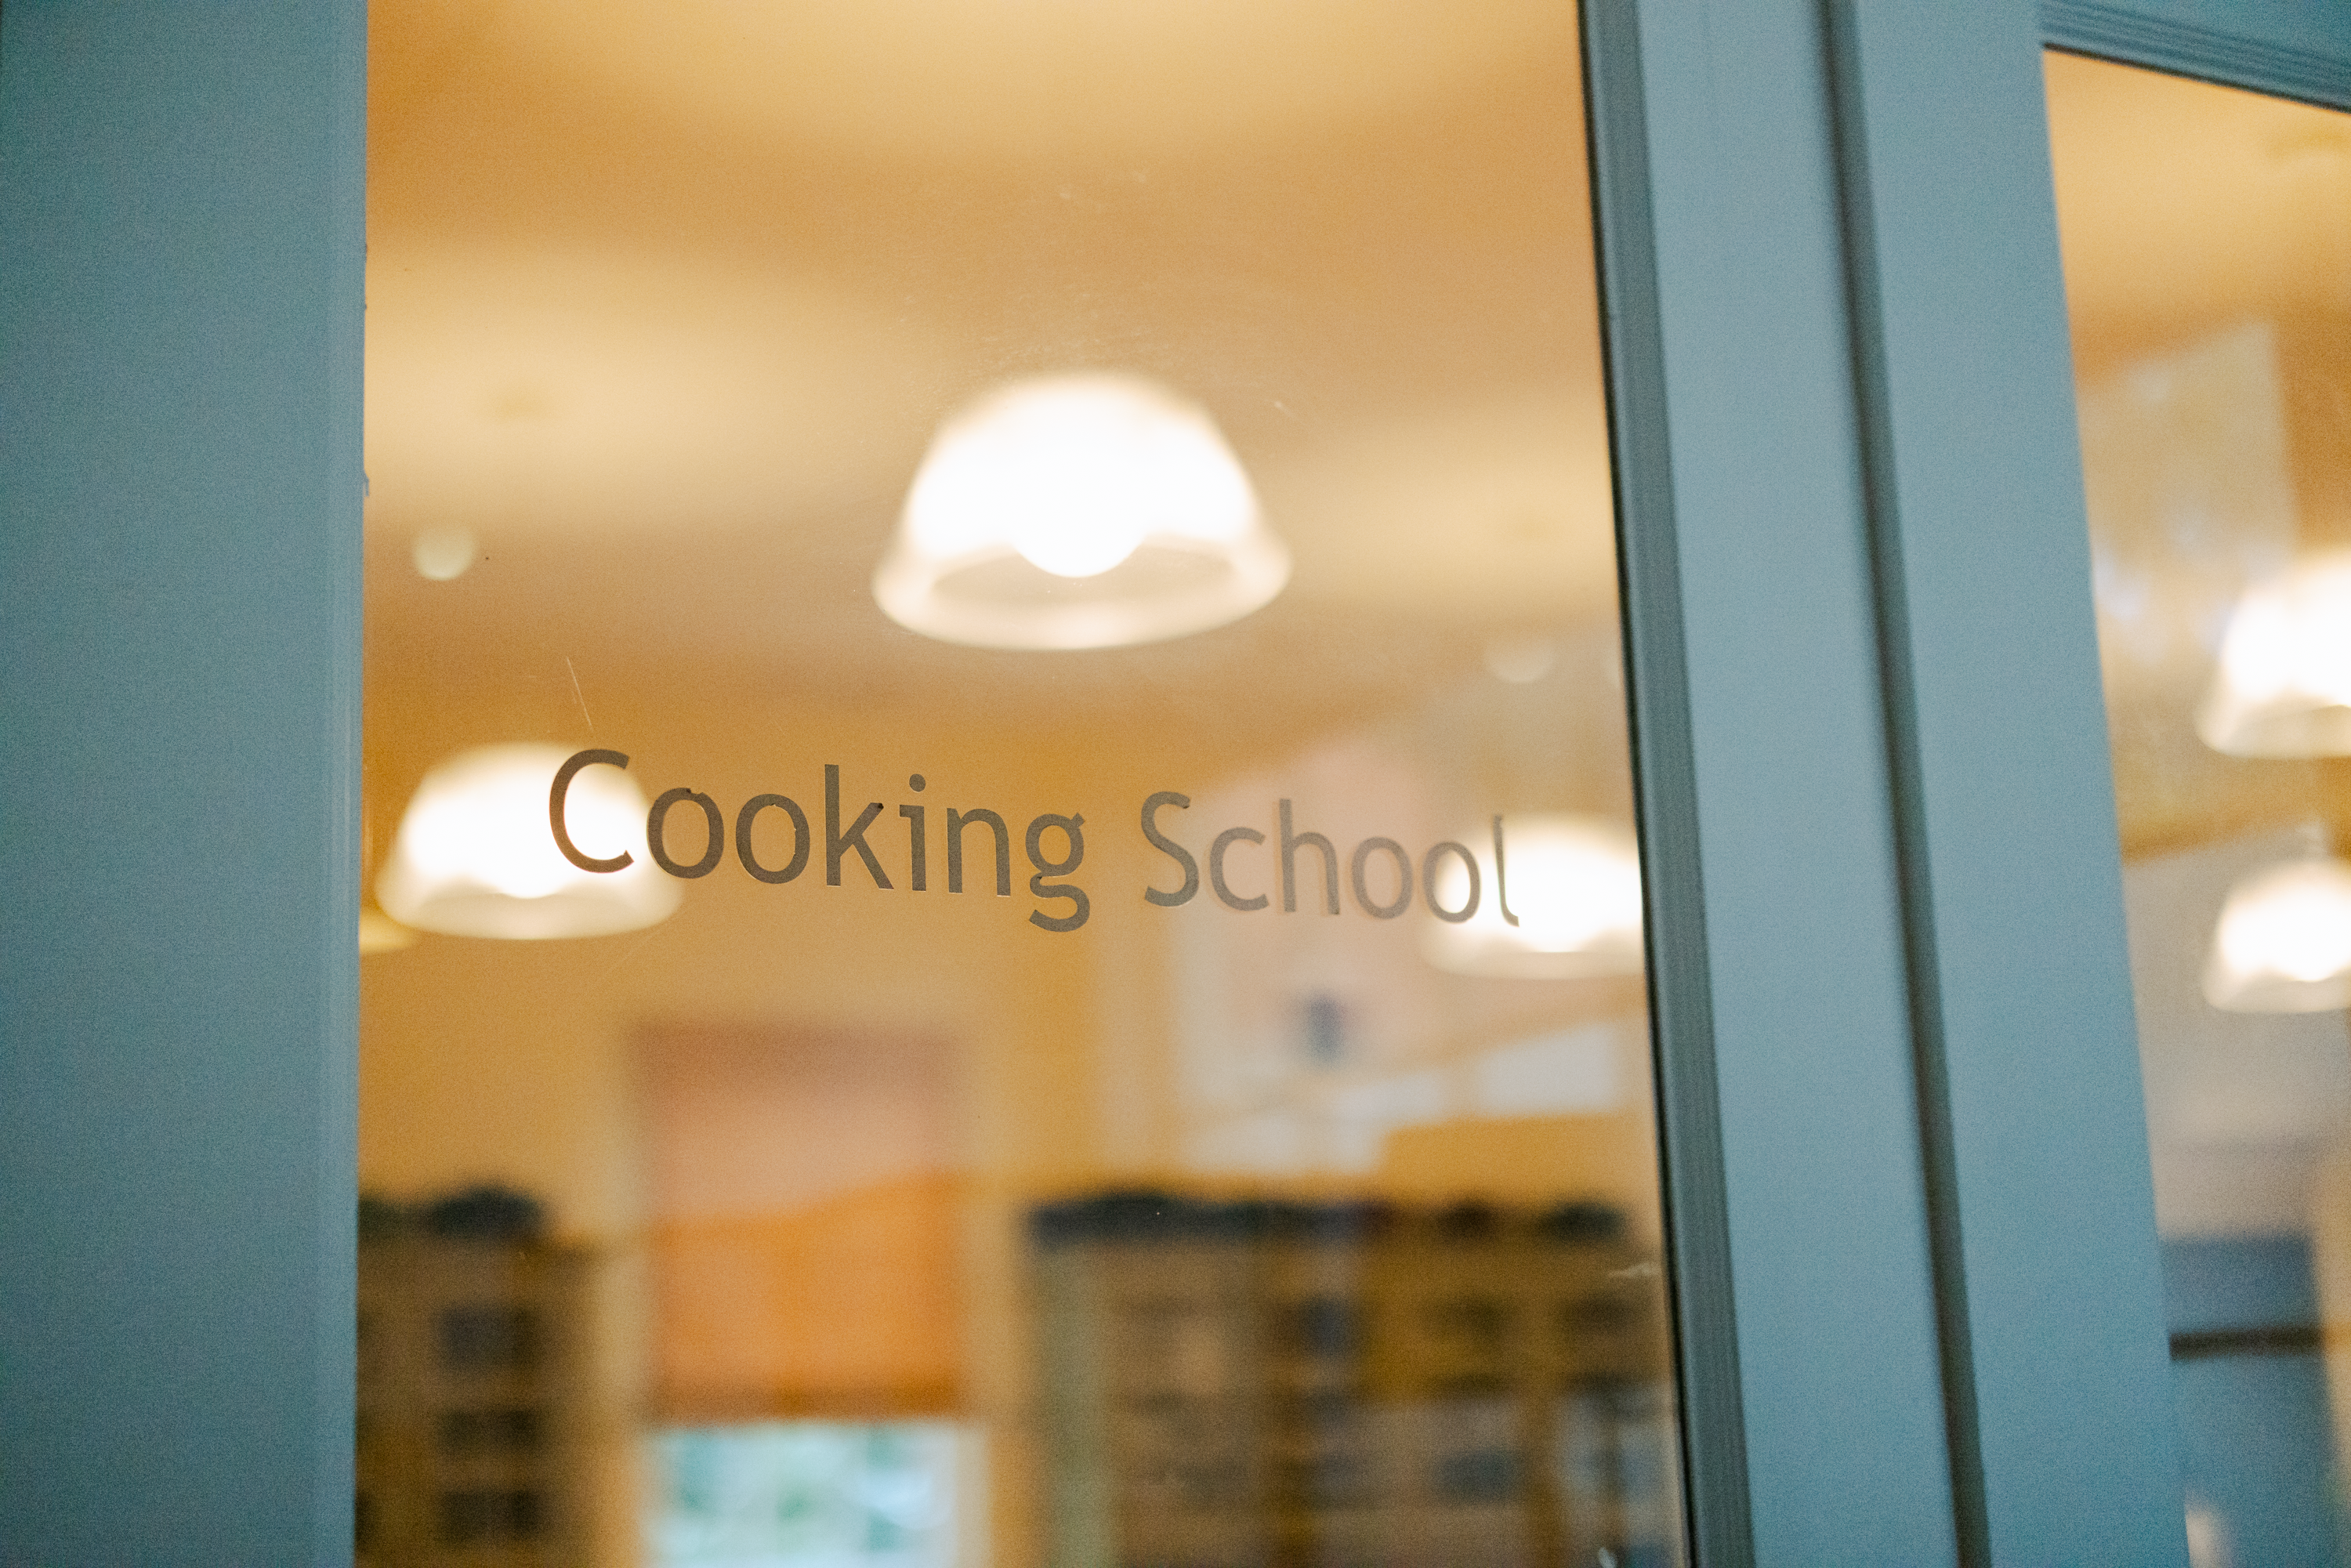 Cooking school sign on door